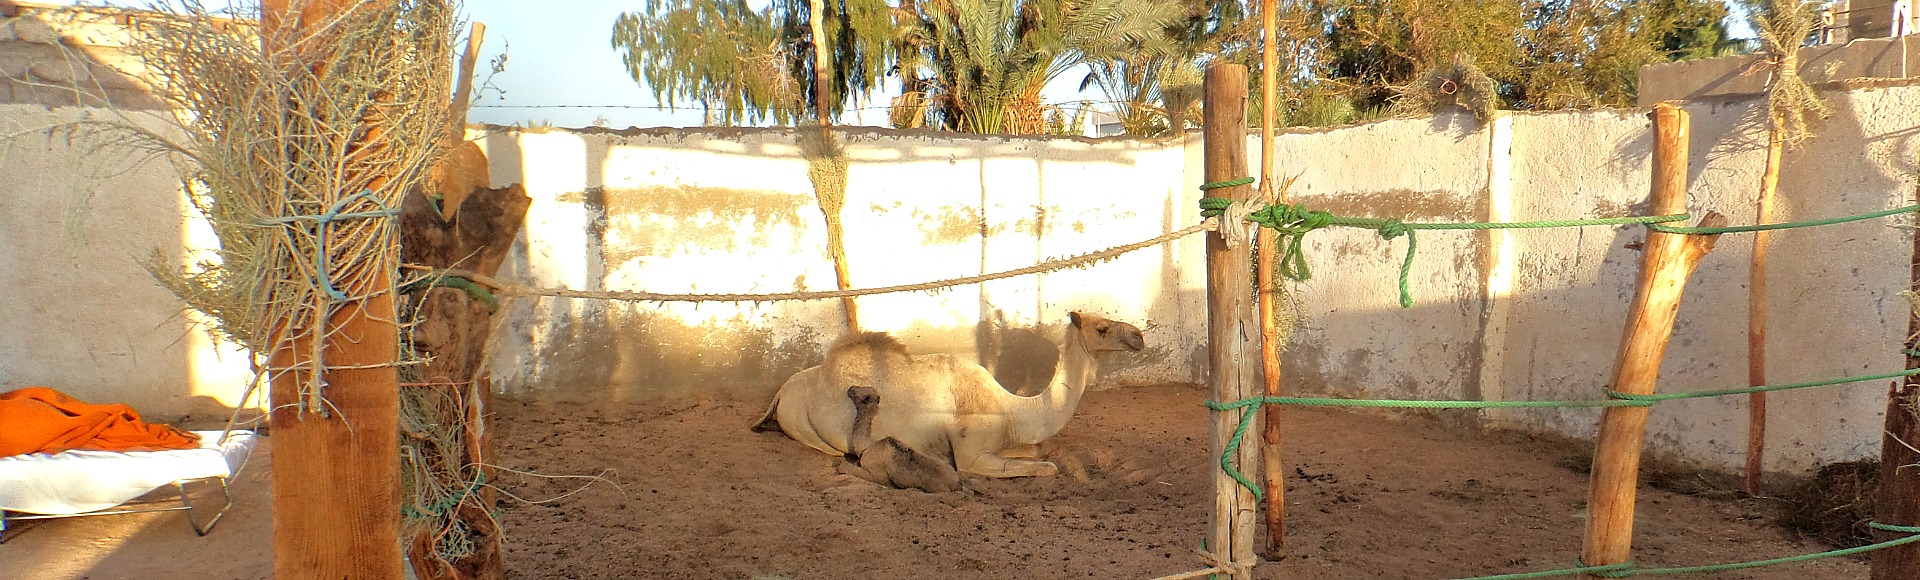 Thuisgeboren kameel Abden